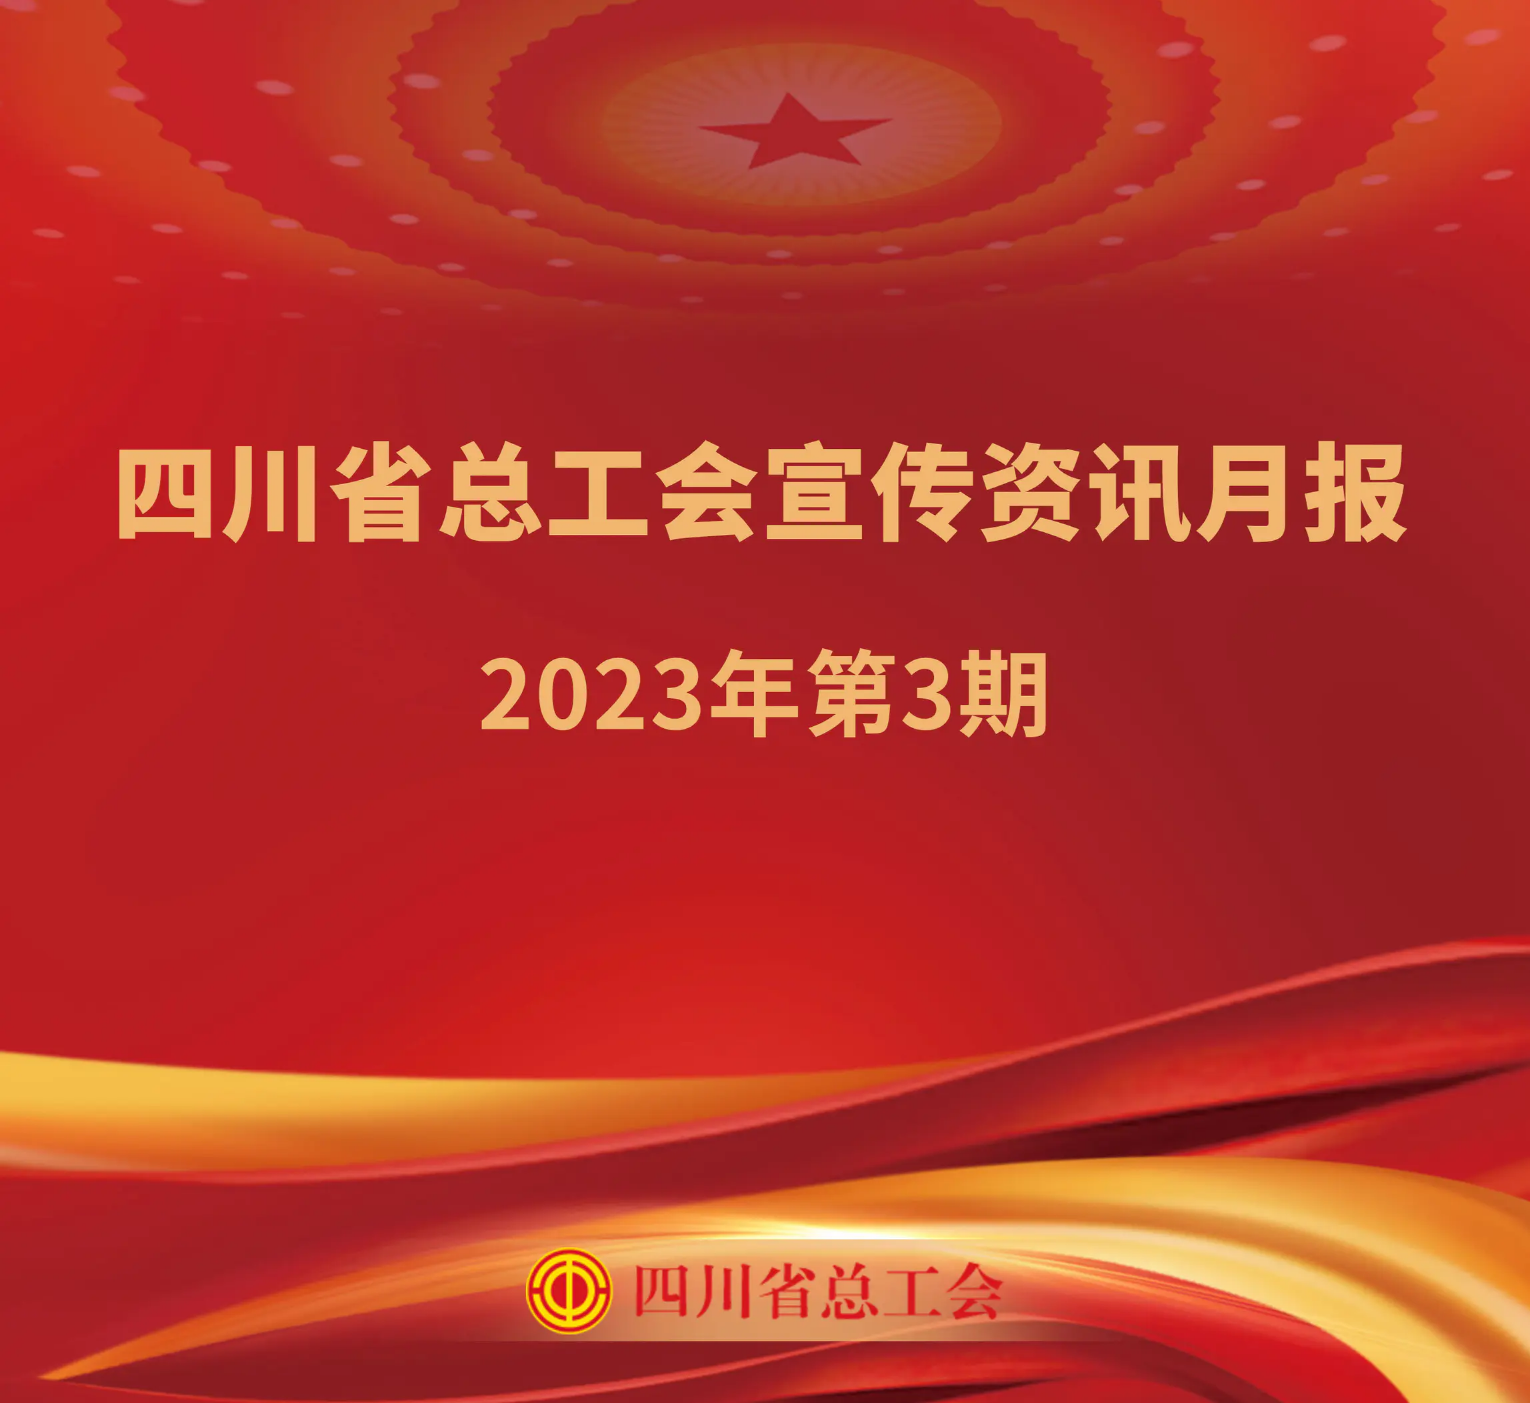 四川省总工会宣传资讯月报2023年第3期_装订本